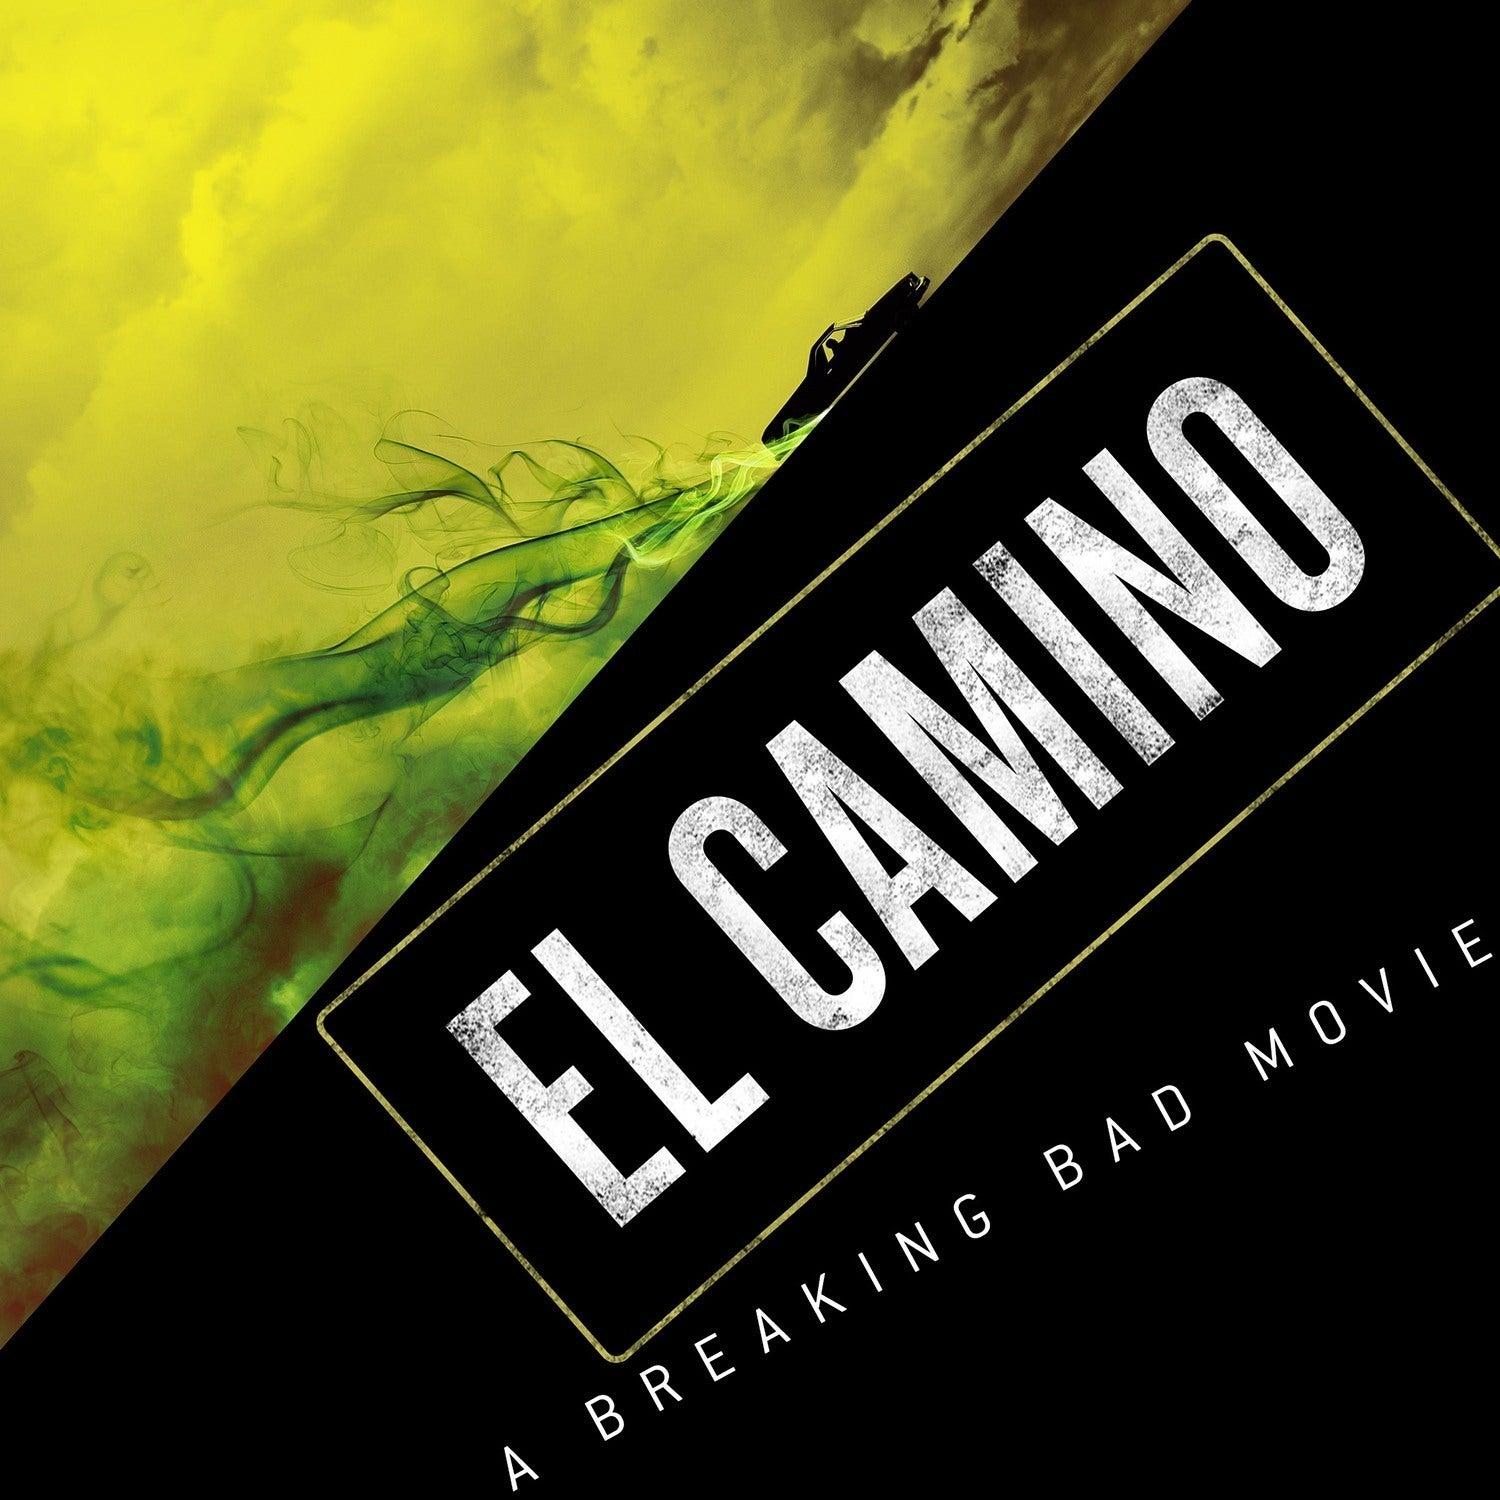 El Camino A Breaking Bad 2019 Movie Wallpapers